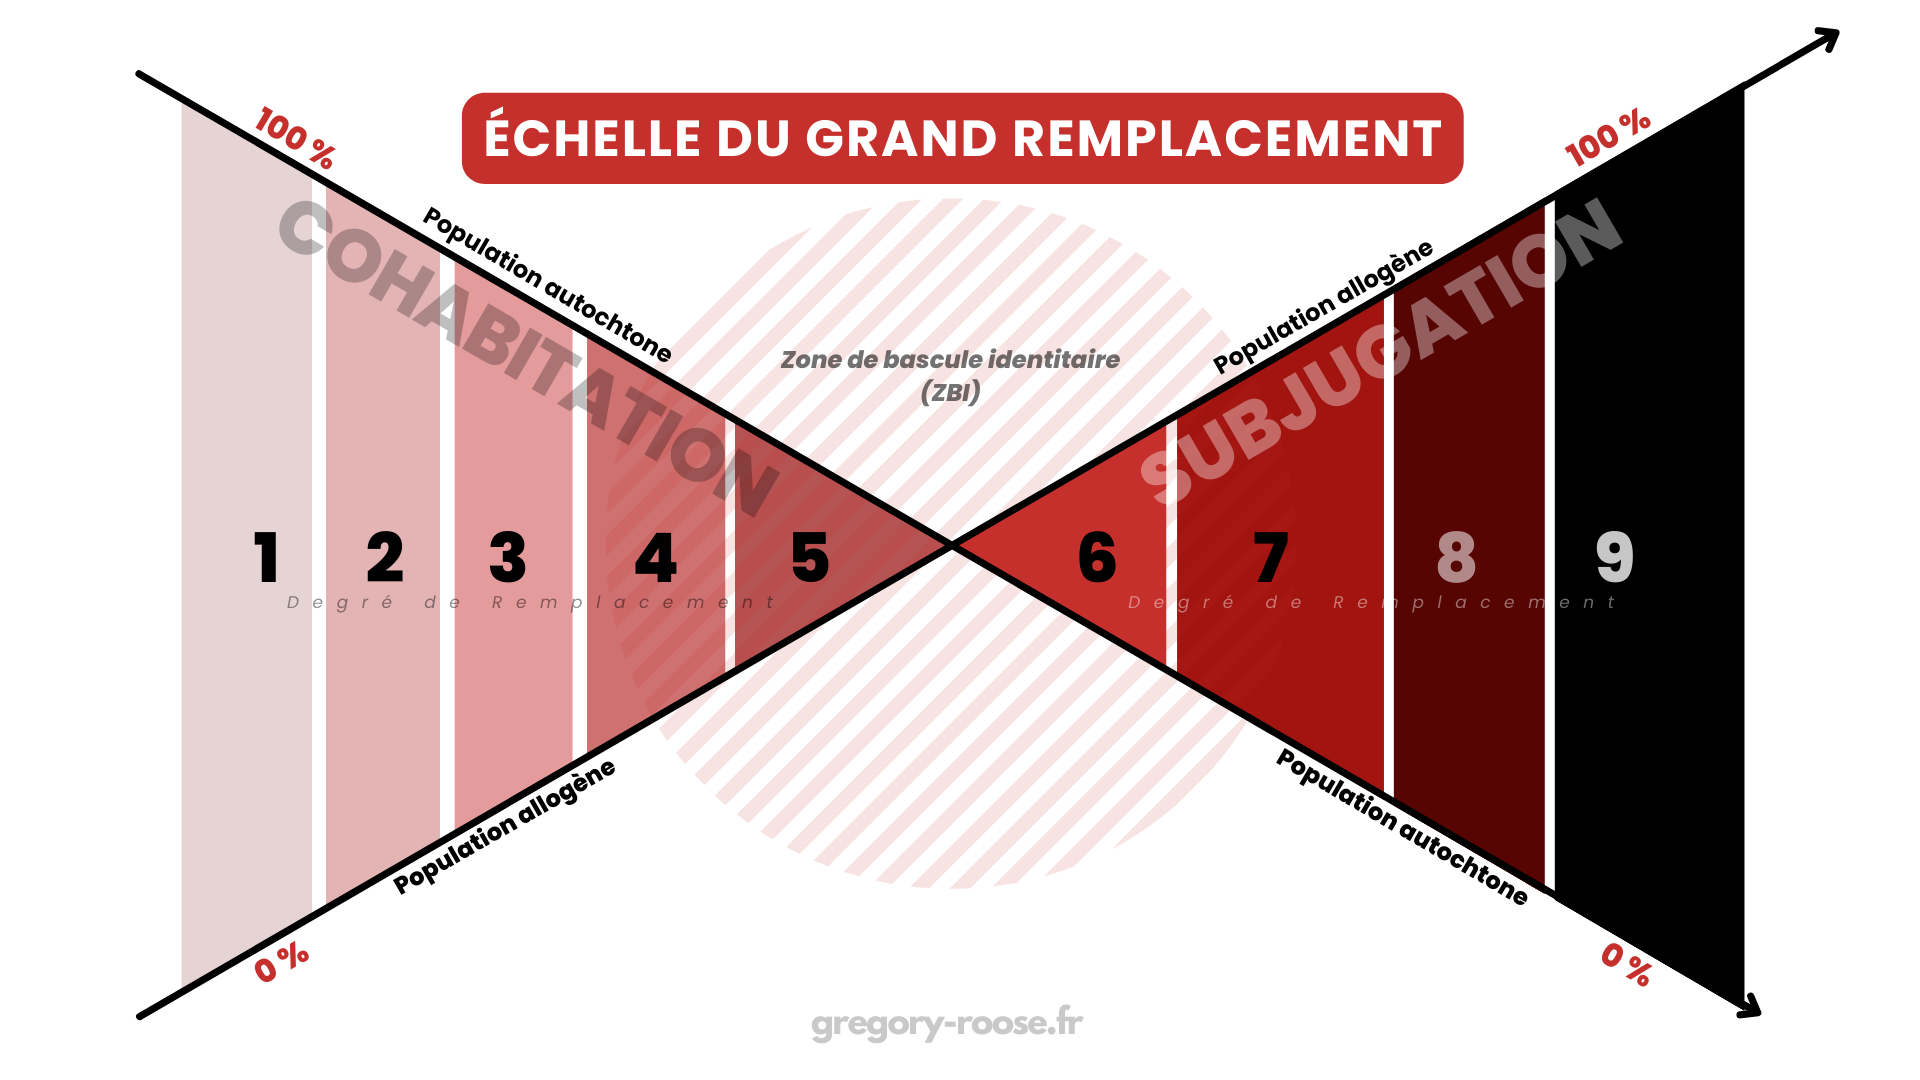 echelle-du-grand-rempacement-et-coeficient-de-subjugation-gregory-roose